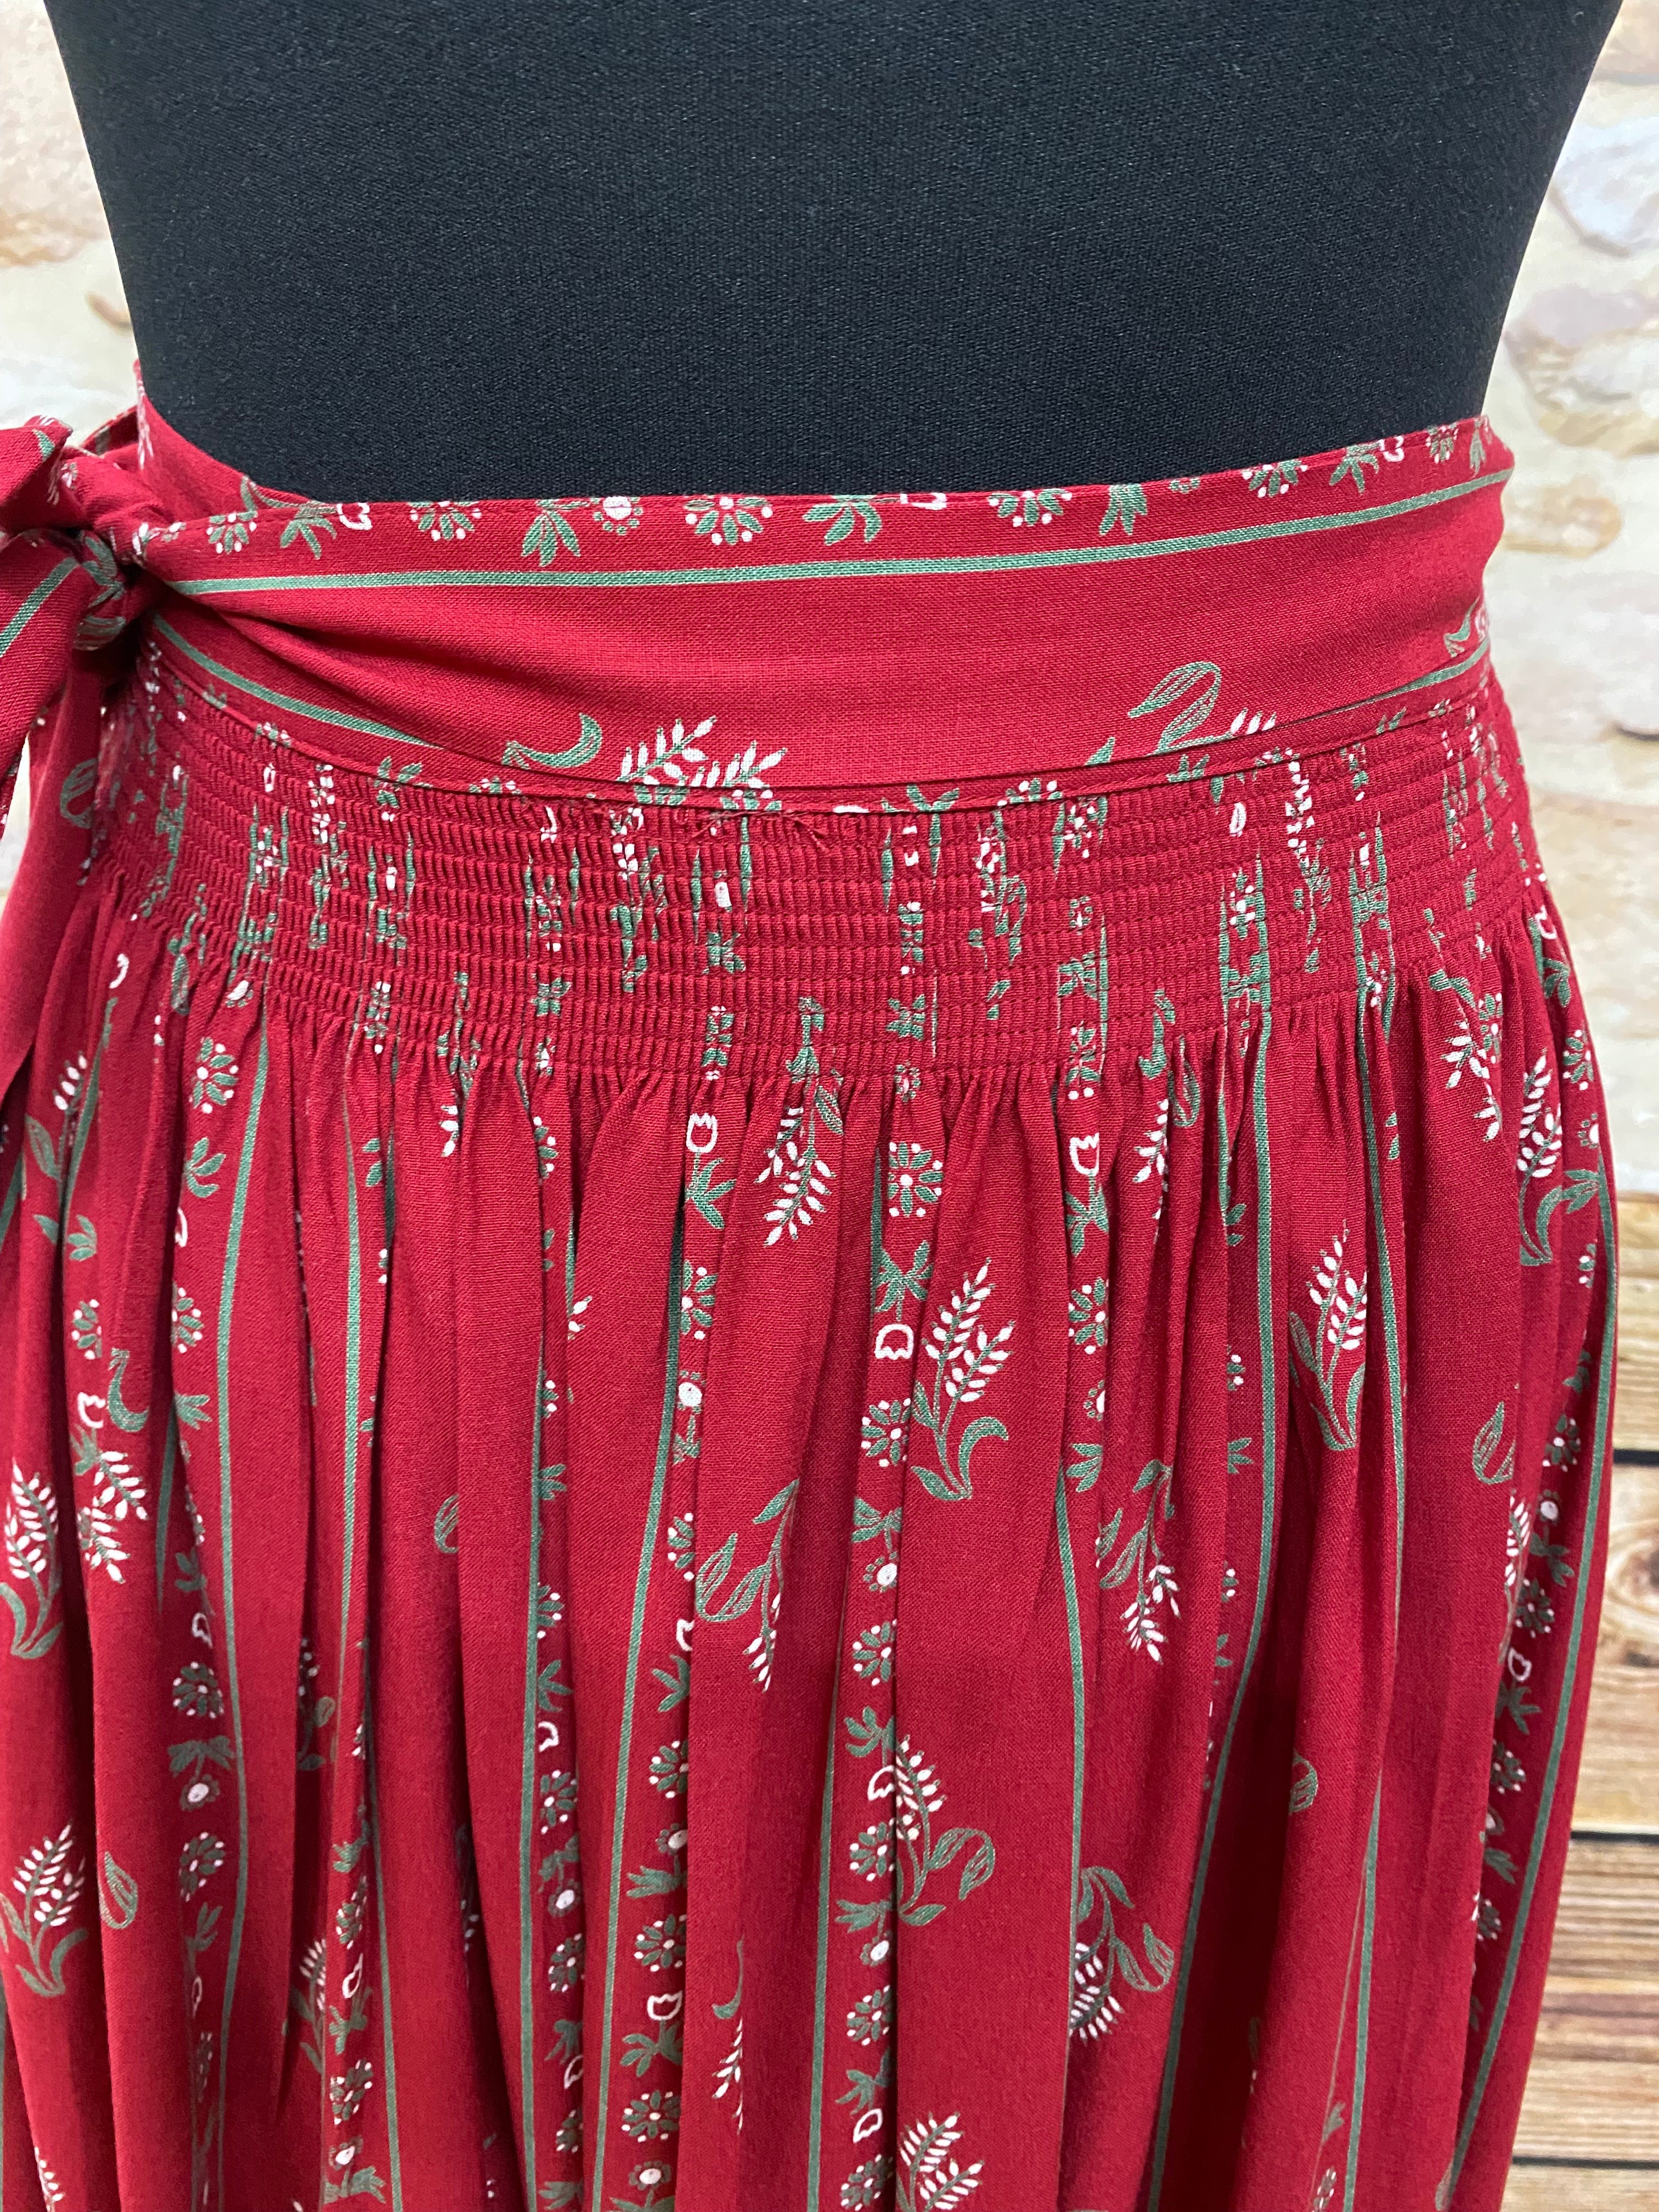 Lange Vintage Trachtenschürze Schürze für Trachtenkleid rot gemustert 80 cm